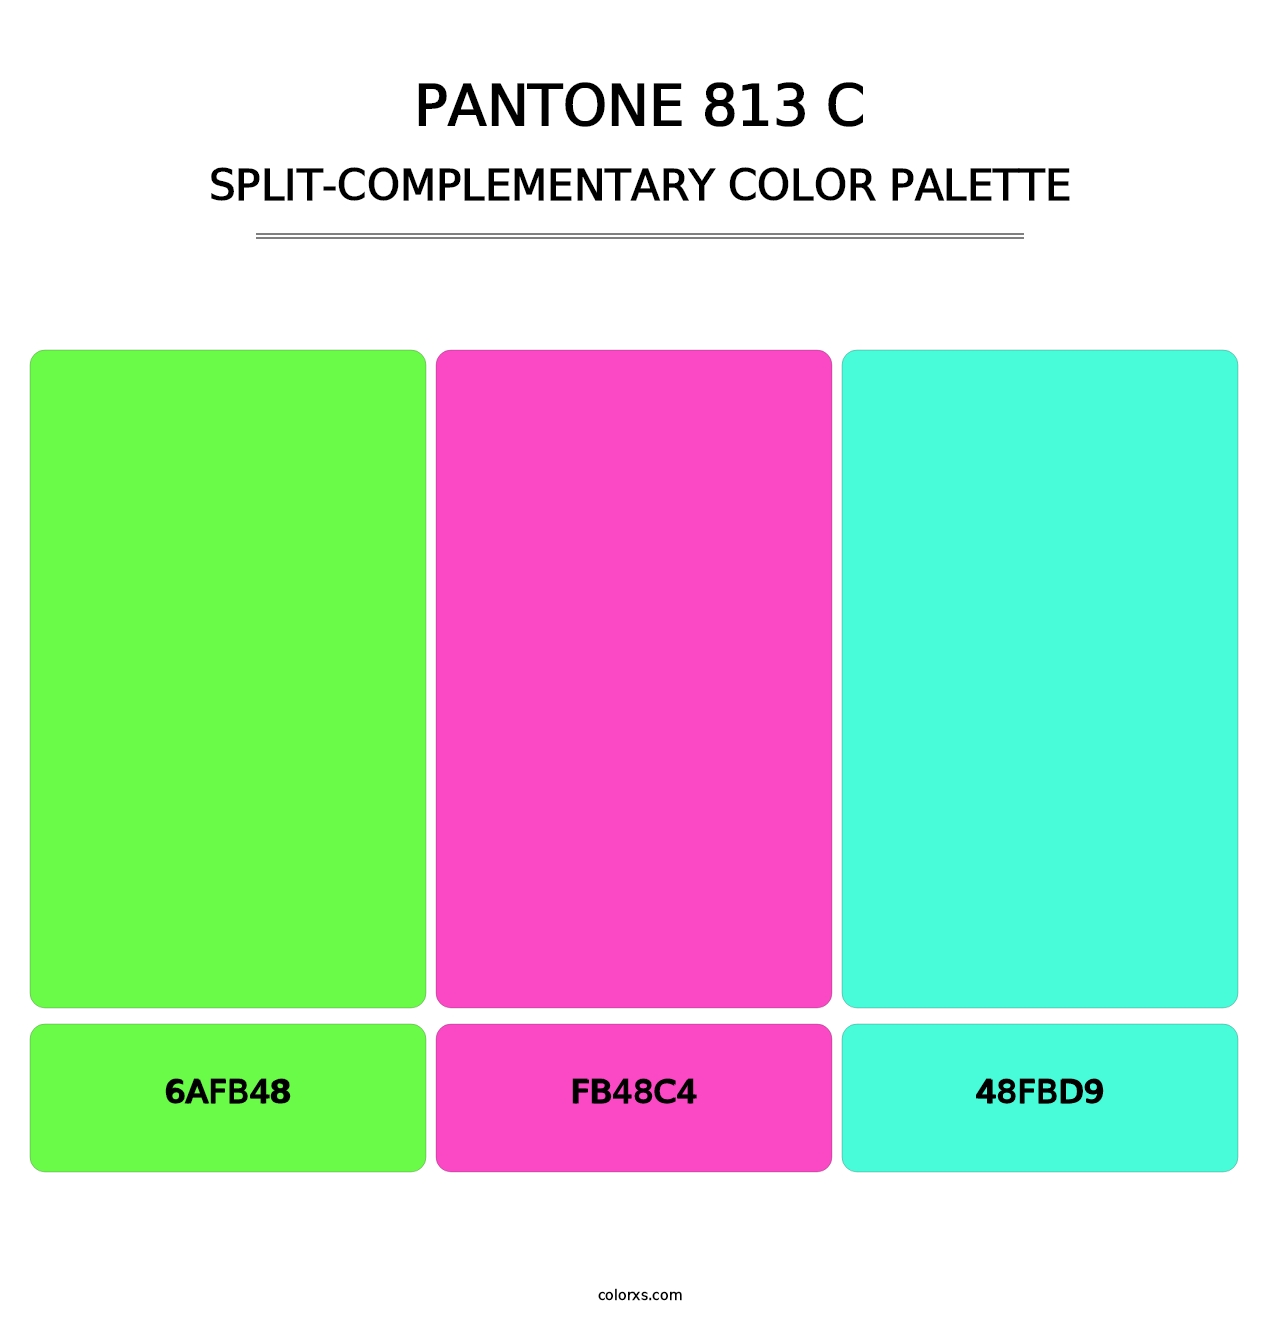 PANTONE 813 C - Split-Complementary Color Palette